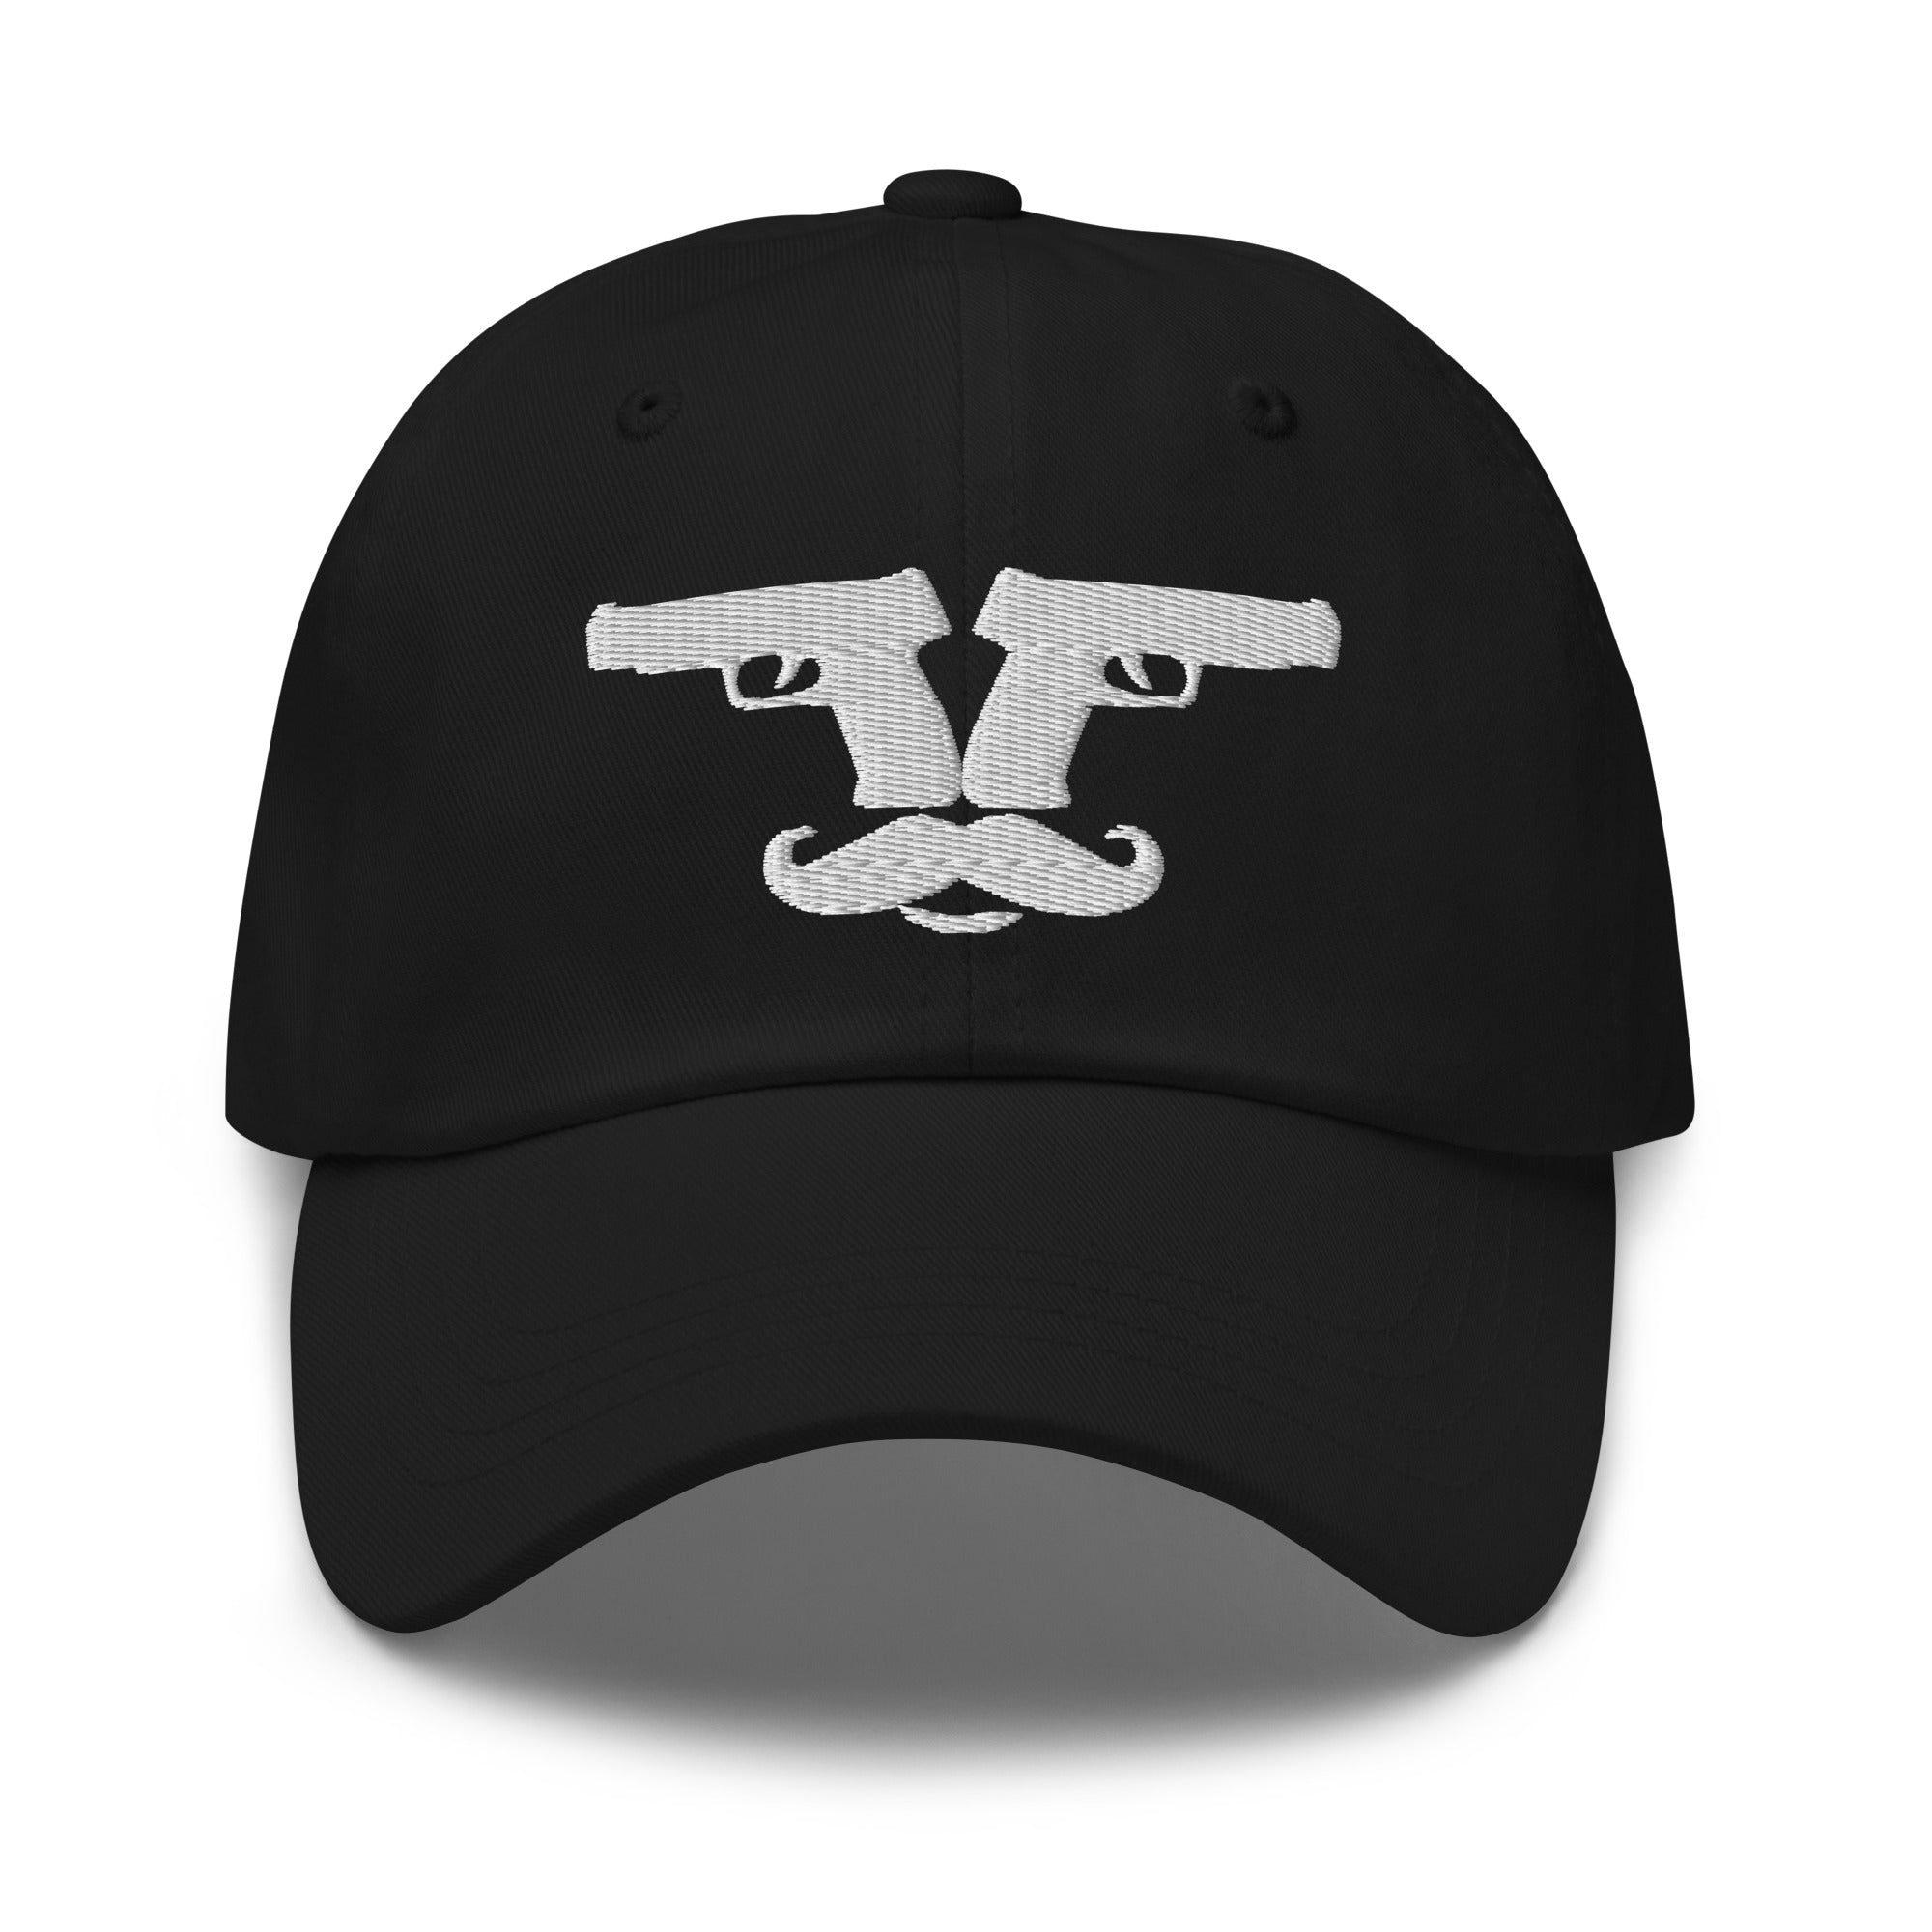 Guns Out Mustache Baseball Hat